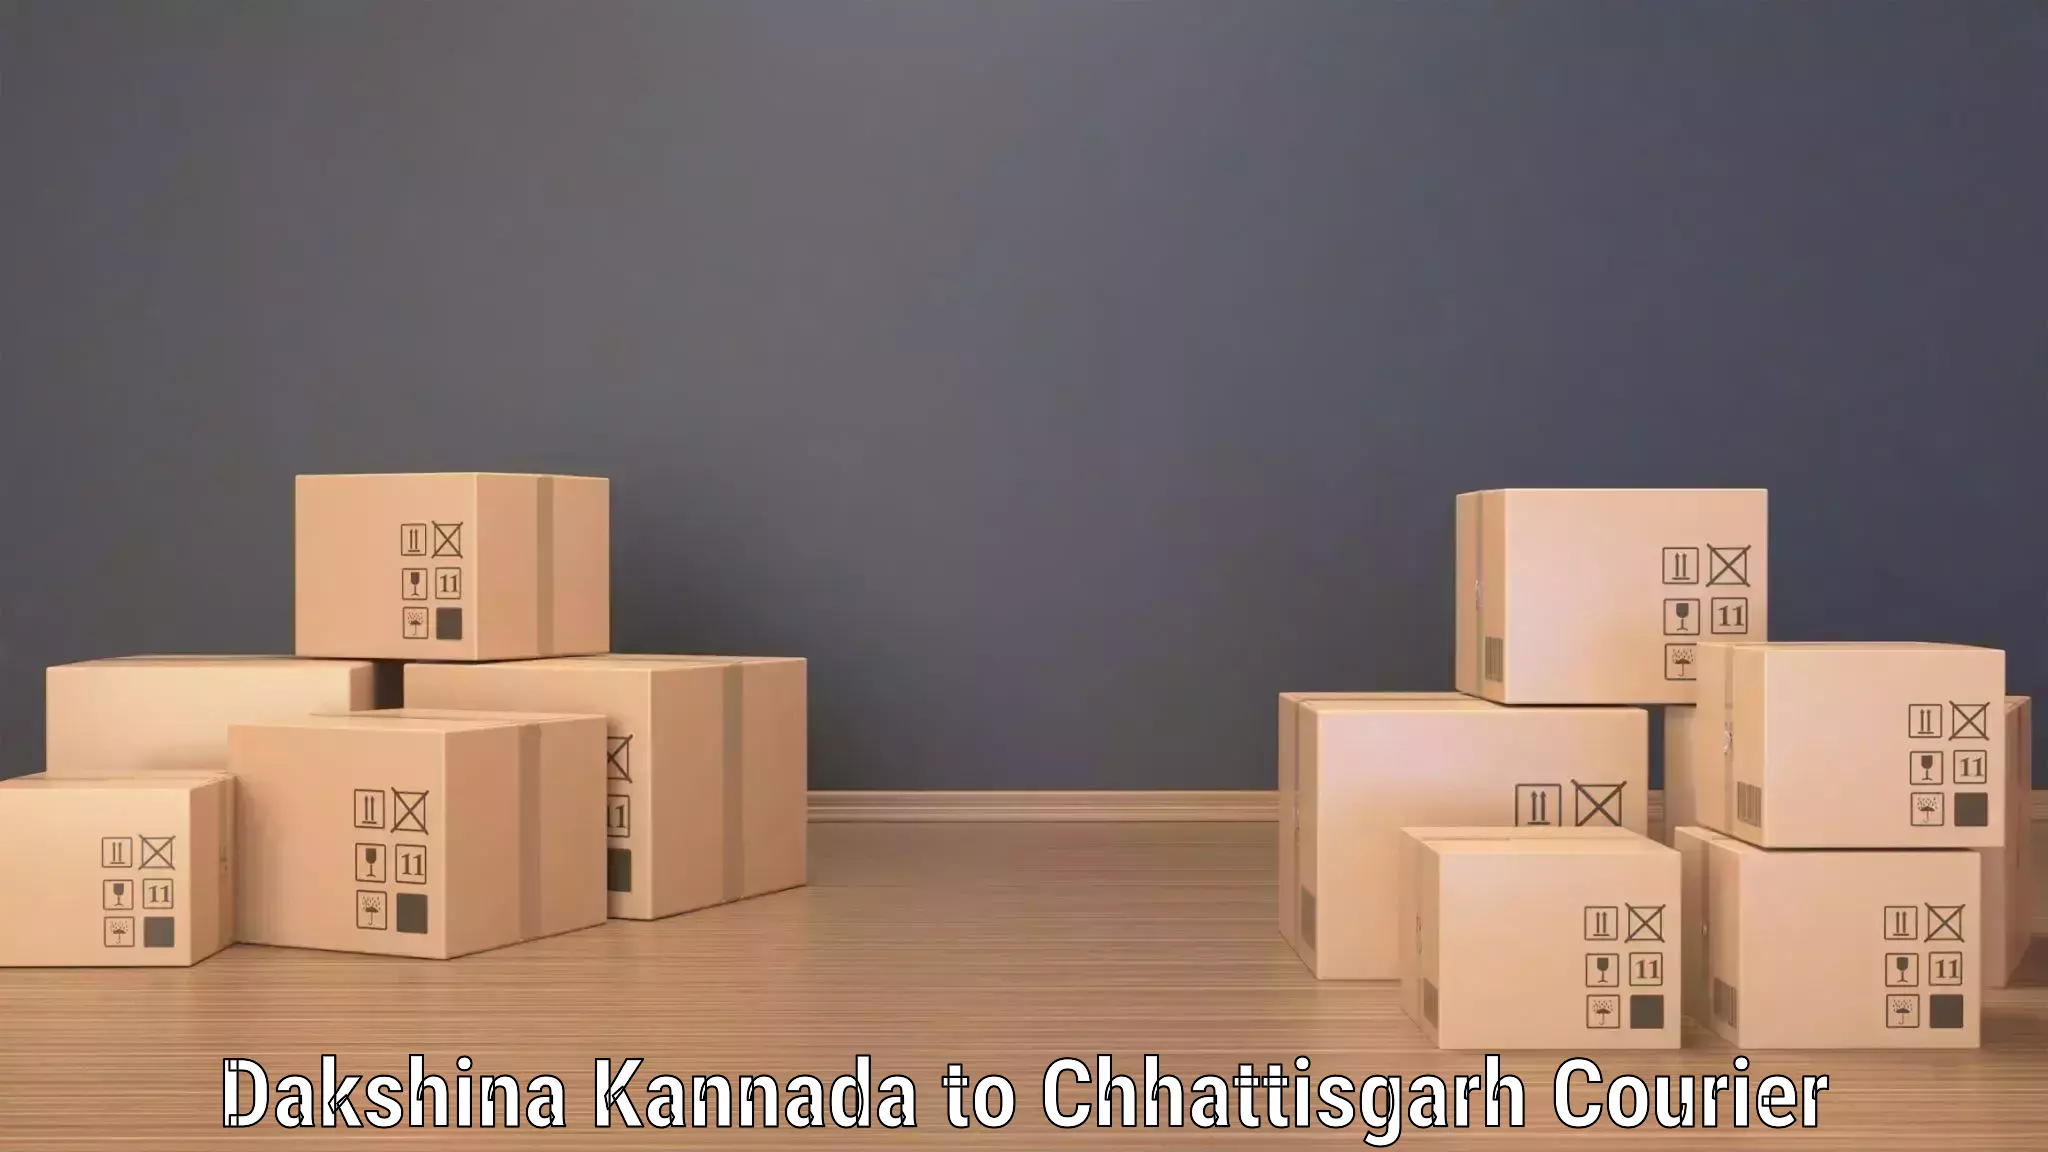 Global shipping networks Dakshina Kannada to Raigarh